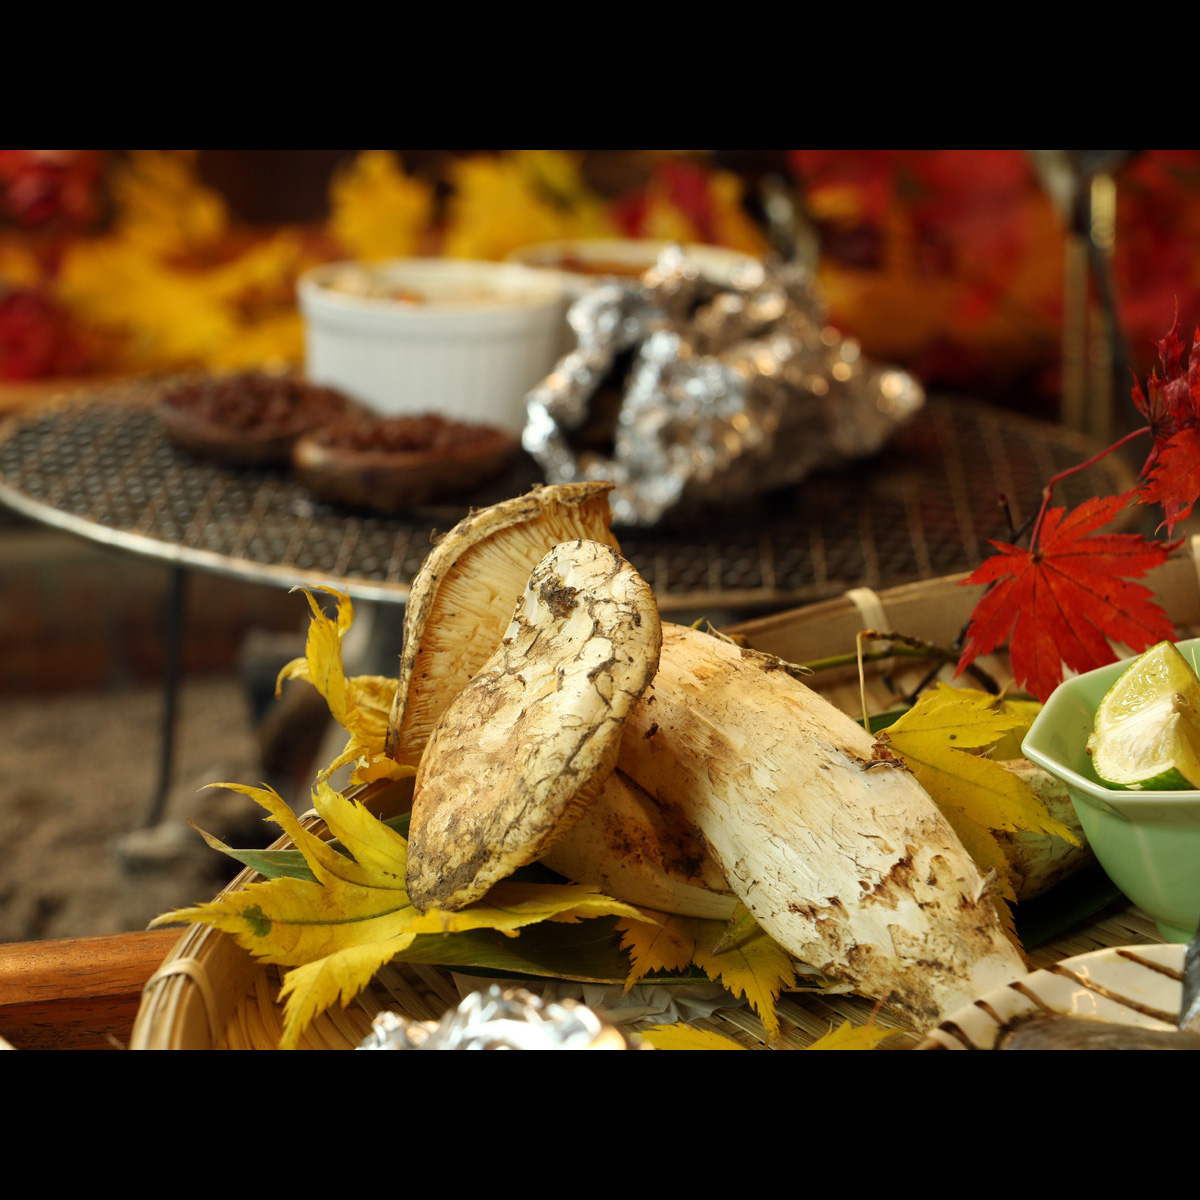 キノコの王様松茸♪秋だけの旬の味覚を住吉館流でお楽しみください。